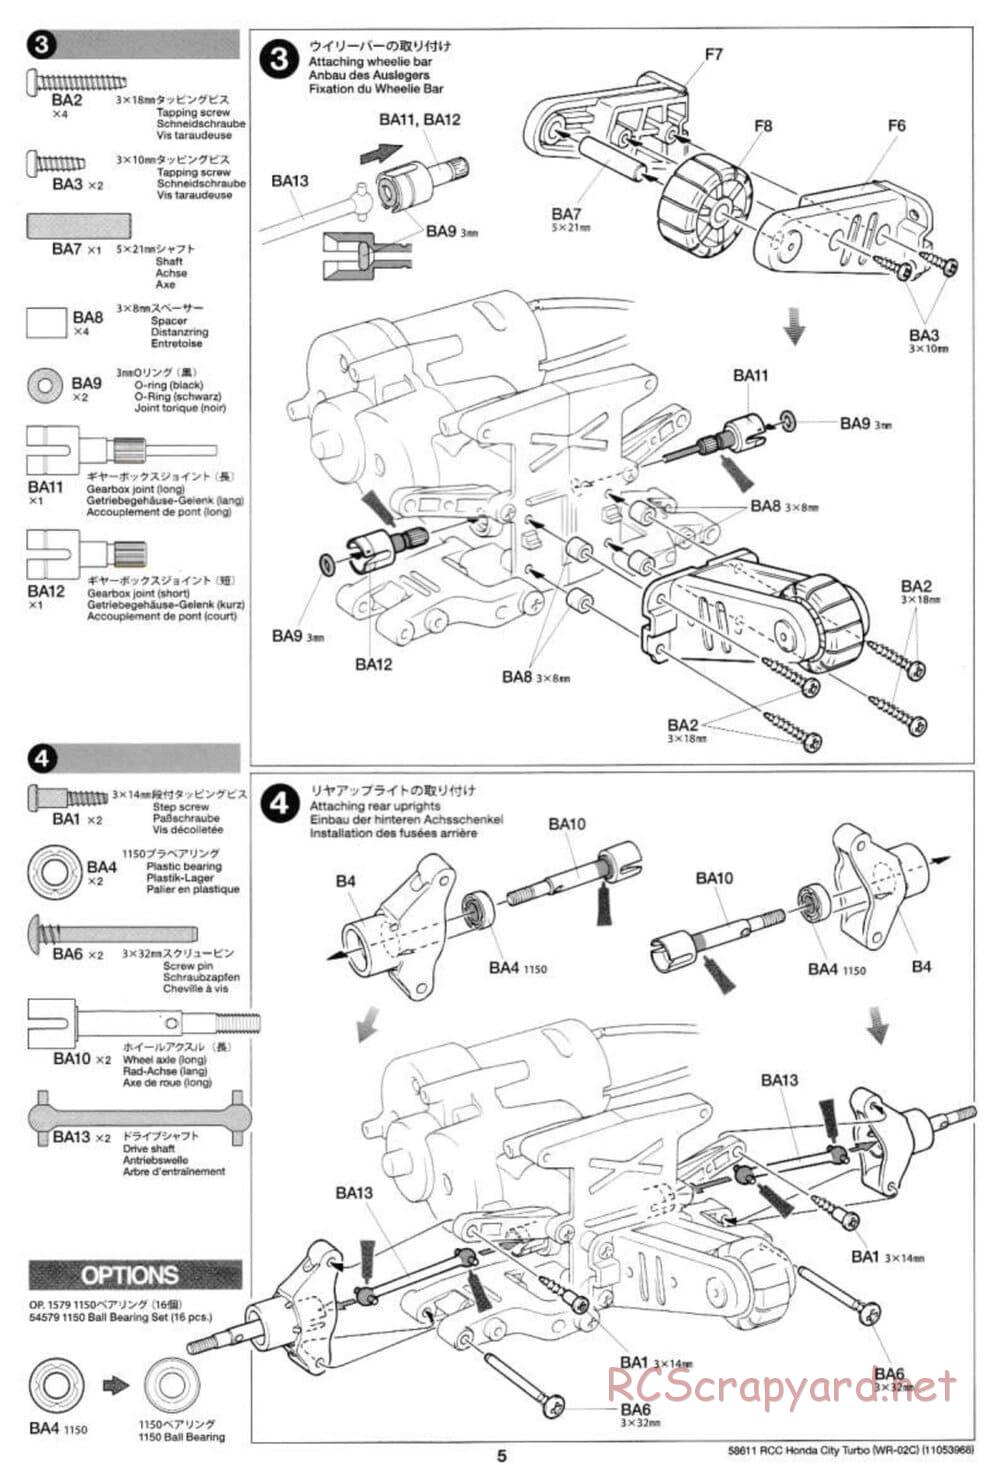 Tamiya - Honda City Turbo - WR-02C Chassis - Manual - Page 5